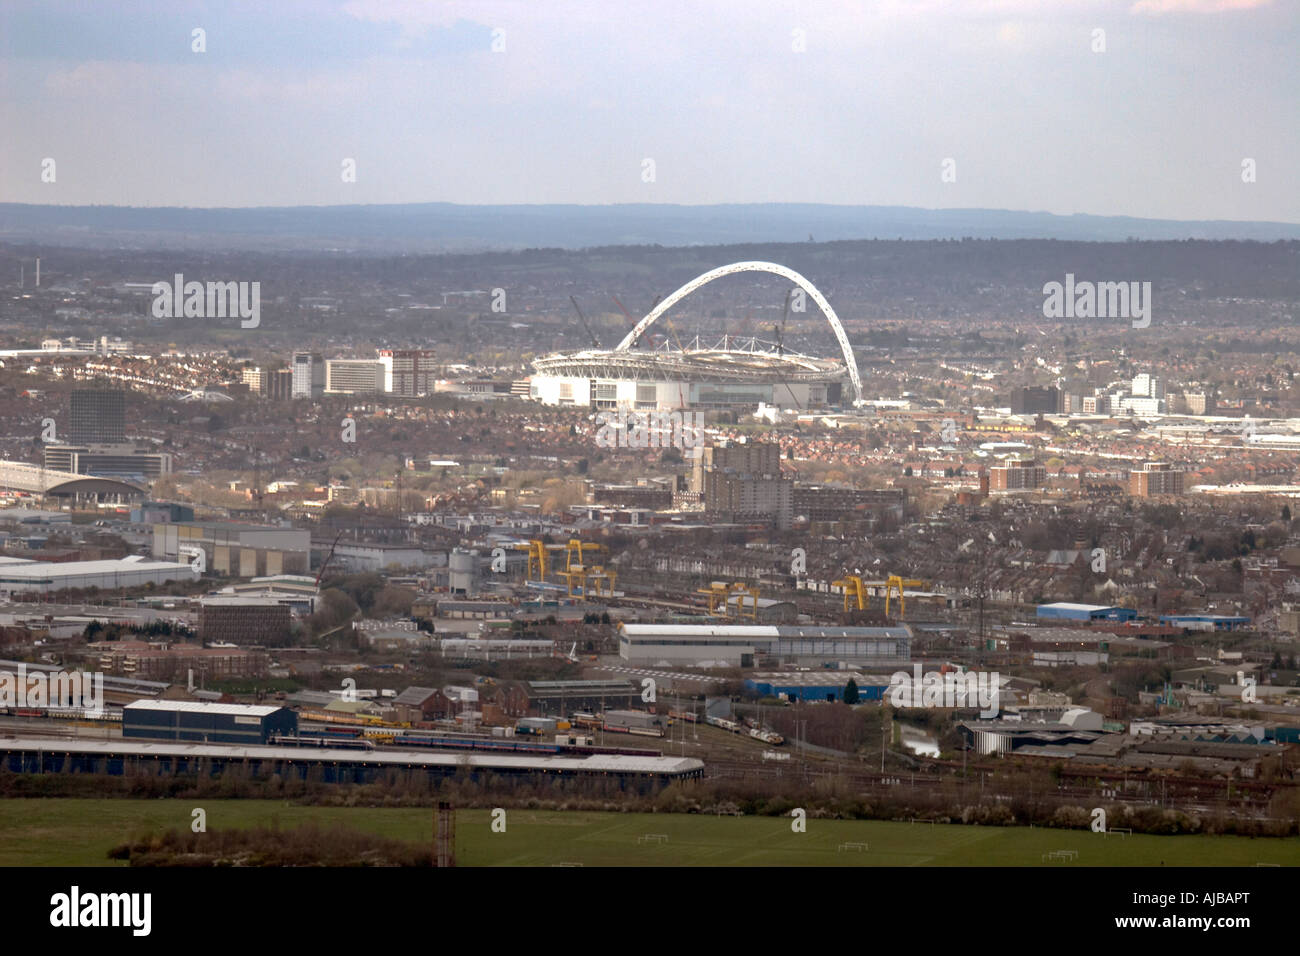 Vue aérienne au nord-ouest de stade de Wembley et bâtiments de banlieue London HA9 England UK Banque D'Images